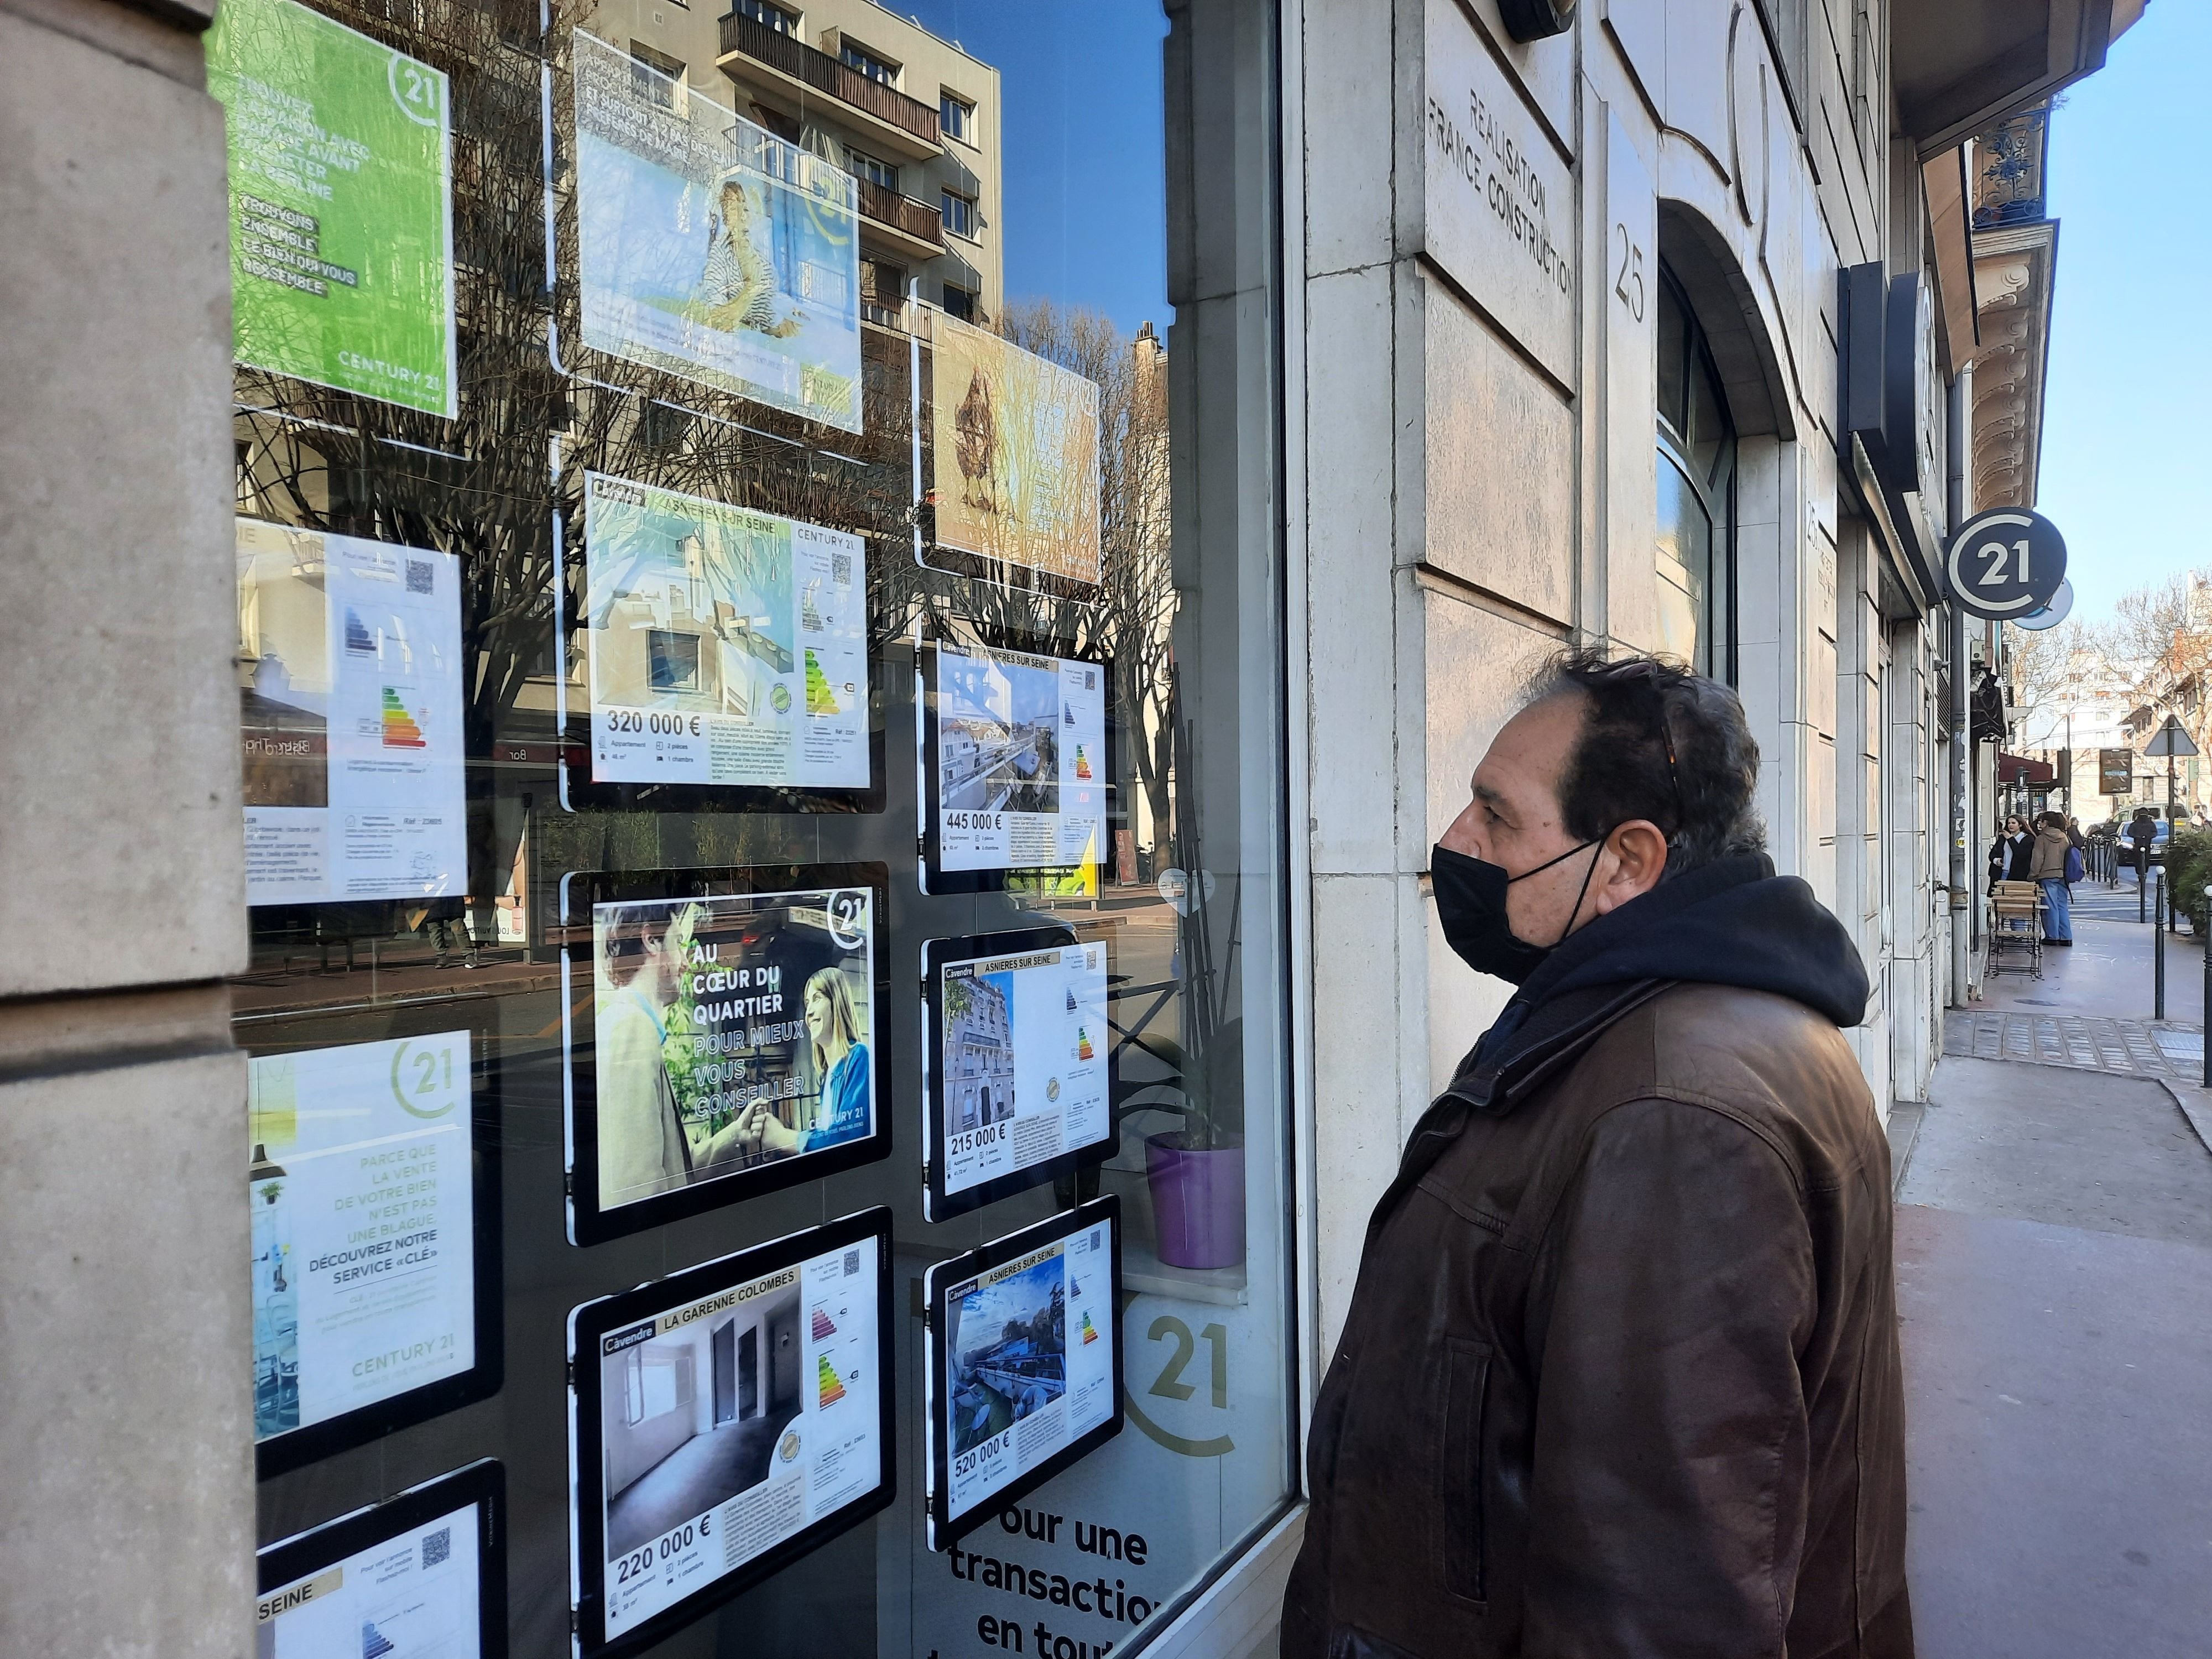 La ville d'Asnières-sur-Seine, particulièrement représentative de la situation immobilière dans les Hauts-de-Seine, connaît une baisse des prix des biens. Ceux-ci restent cependant élevés et ne trouvent donc pas forcément preneurs. LP/Lise Tavelet